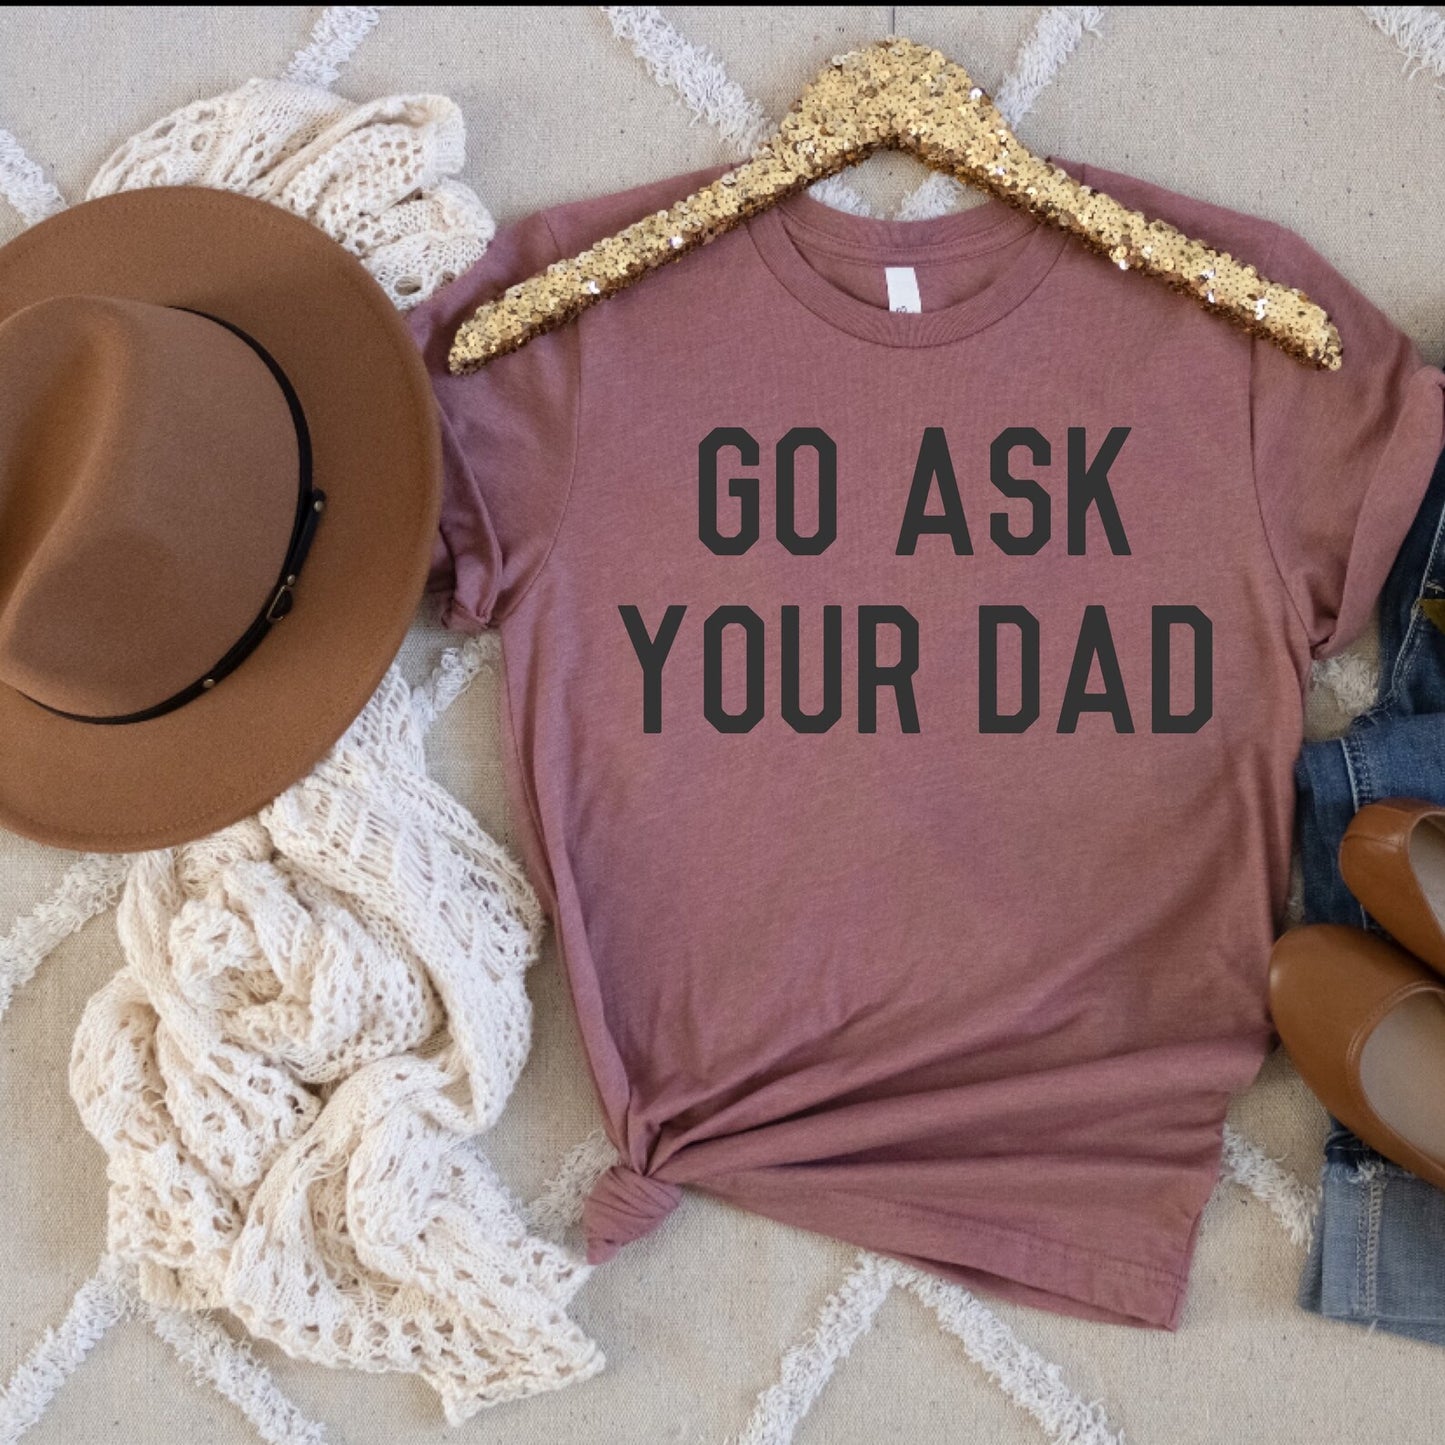 Go Ask your dad shirt| Ask dad shirt| mom life shirt|